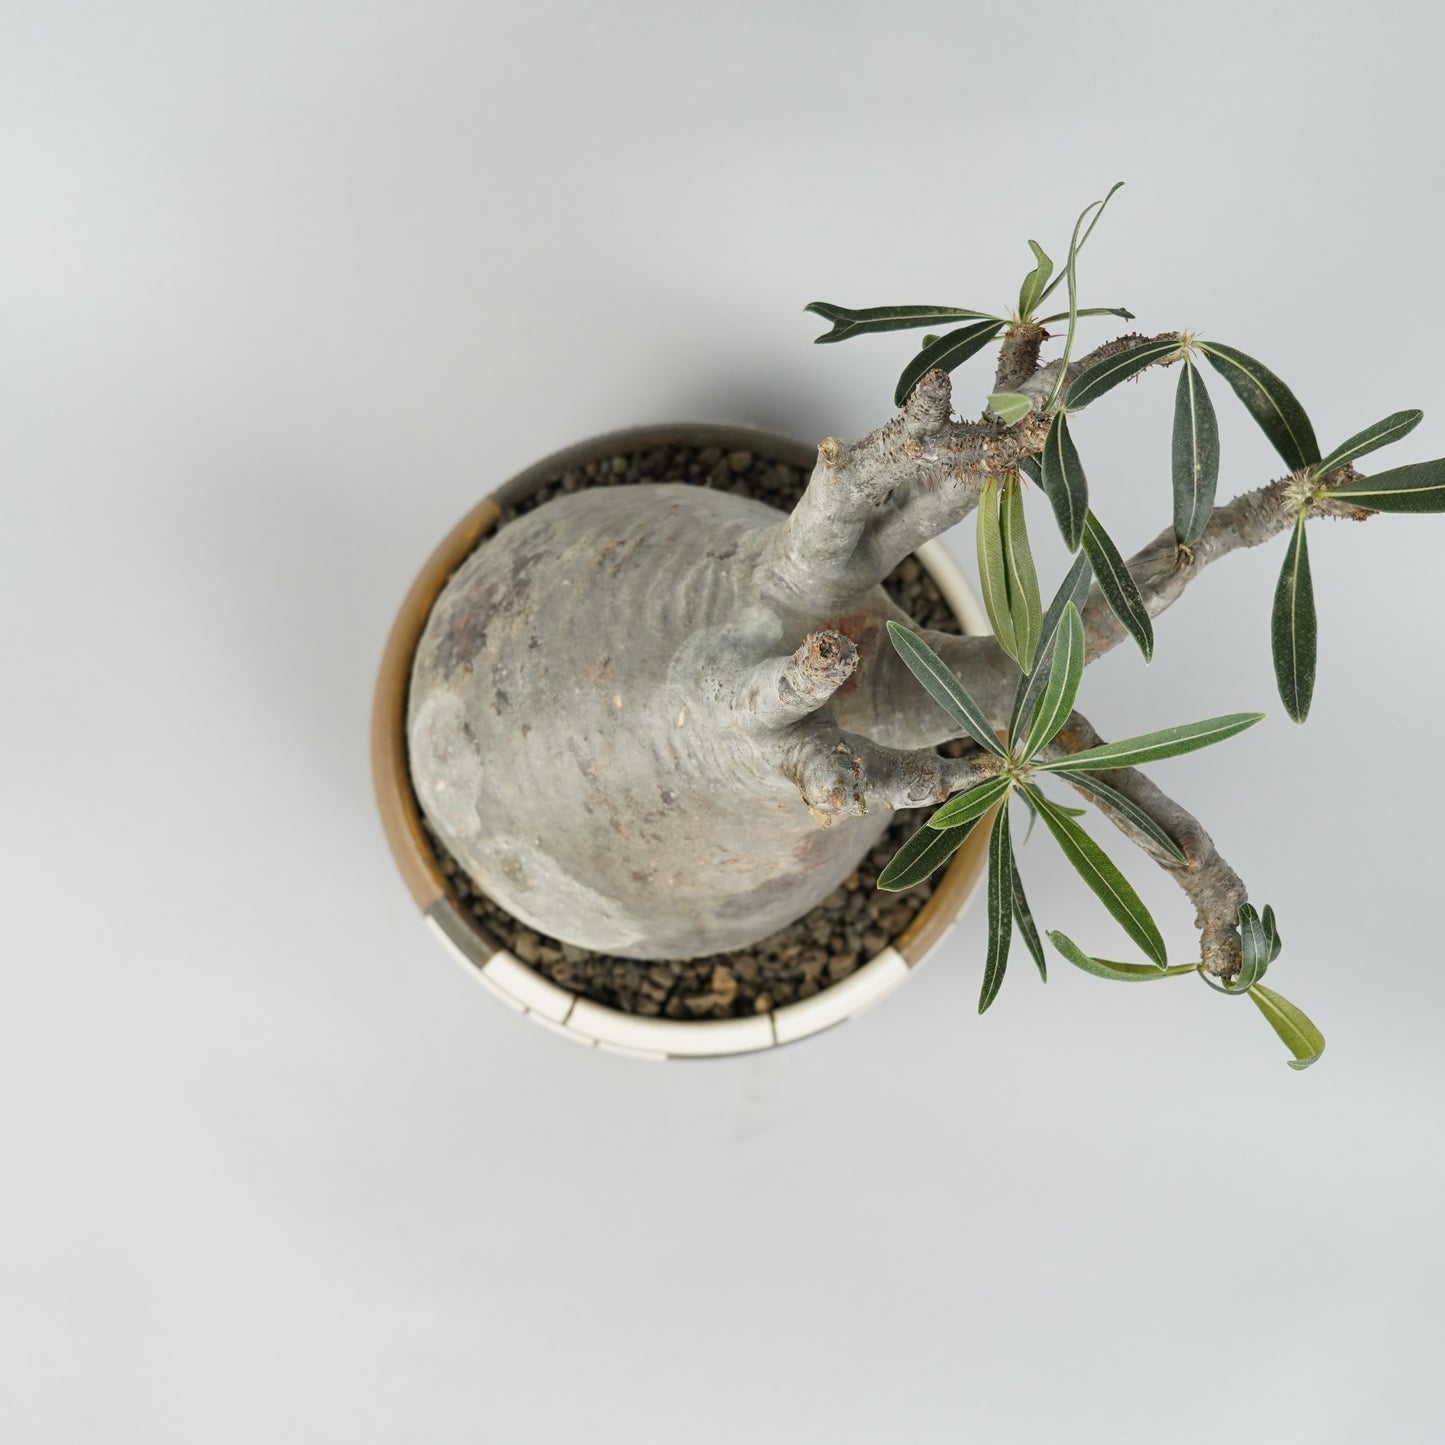 パキポディウム グラキリス「Pachypodium gracilius」/GR0042＋ 鉢3kWKp29